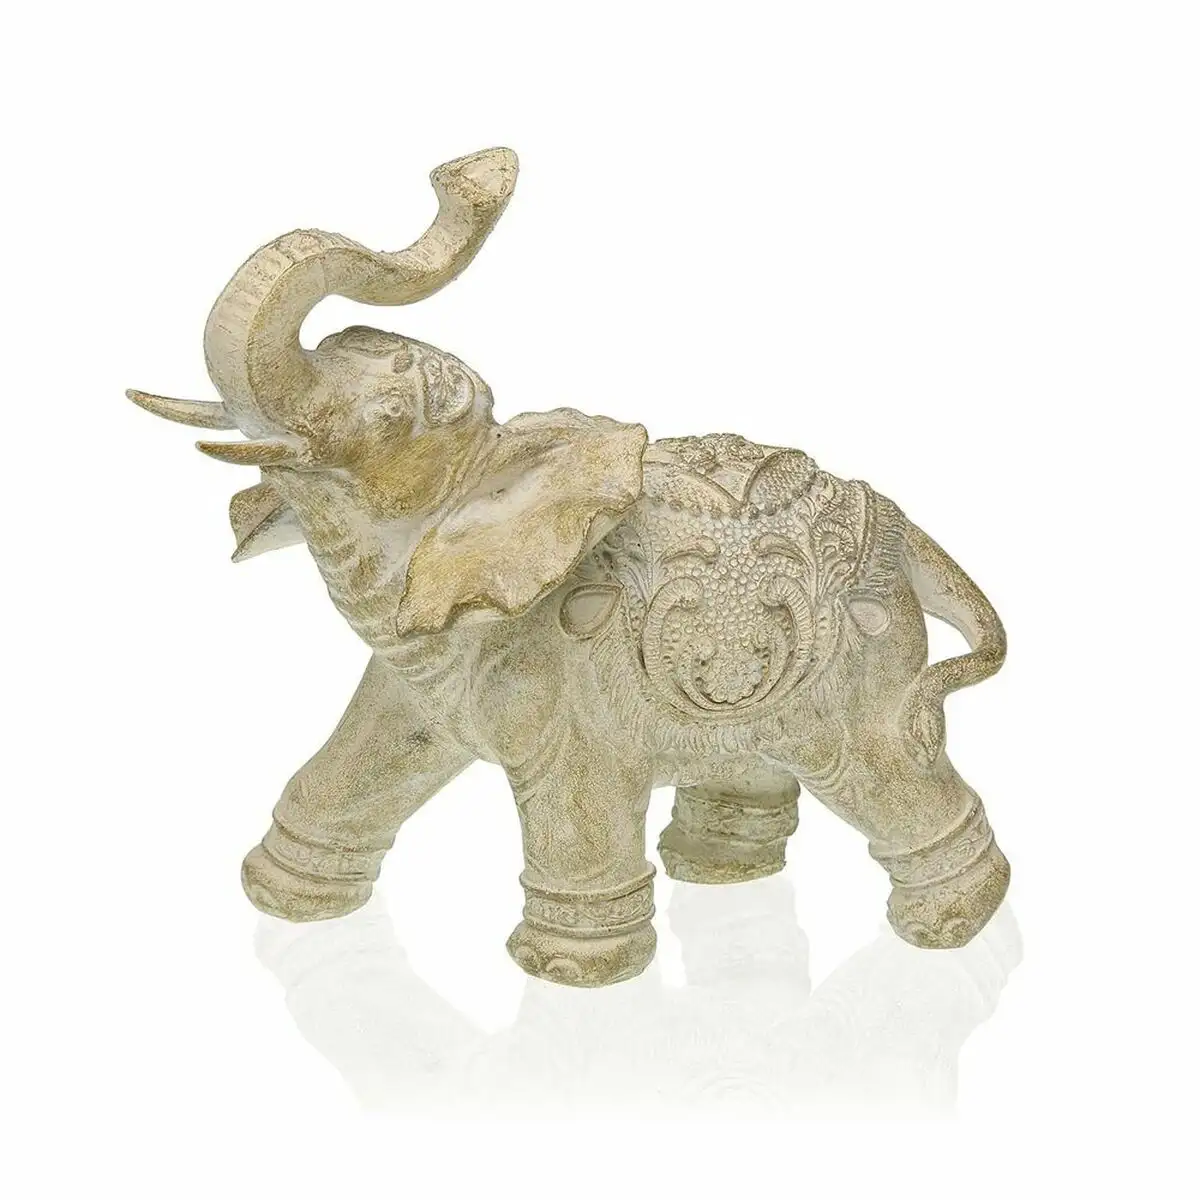 Figurine decorative versa elephant resine 7 5 x 14 x 14 cm _5118. Bienvenue sur DIAYTAR SENEGAL - Où l'Élégance Rencontrer la Tradition. Explorez notre gamme variée et trouvez des articles qui marient le chic moderne au charme ancestral.